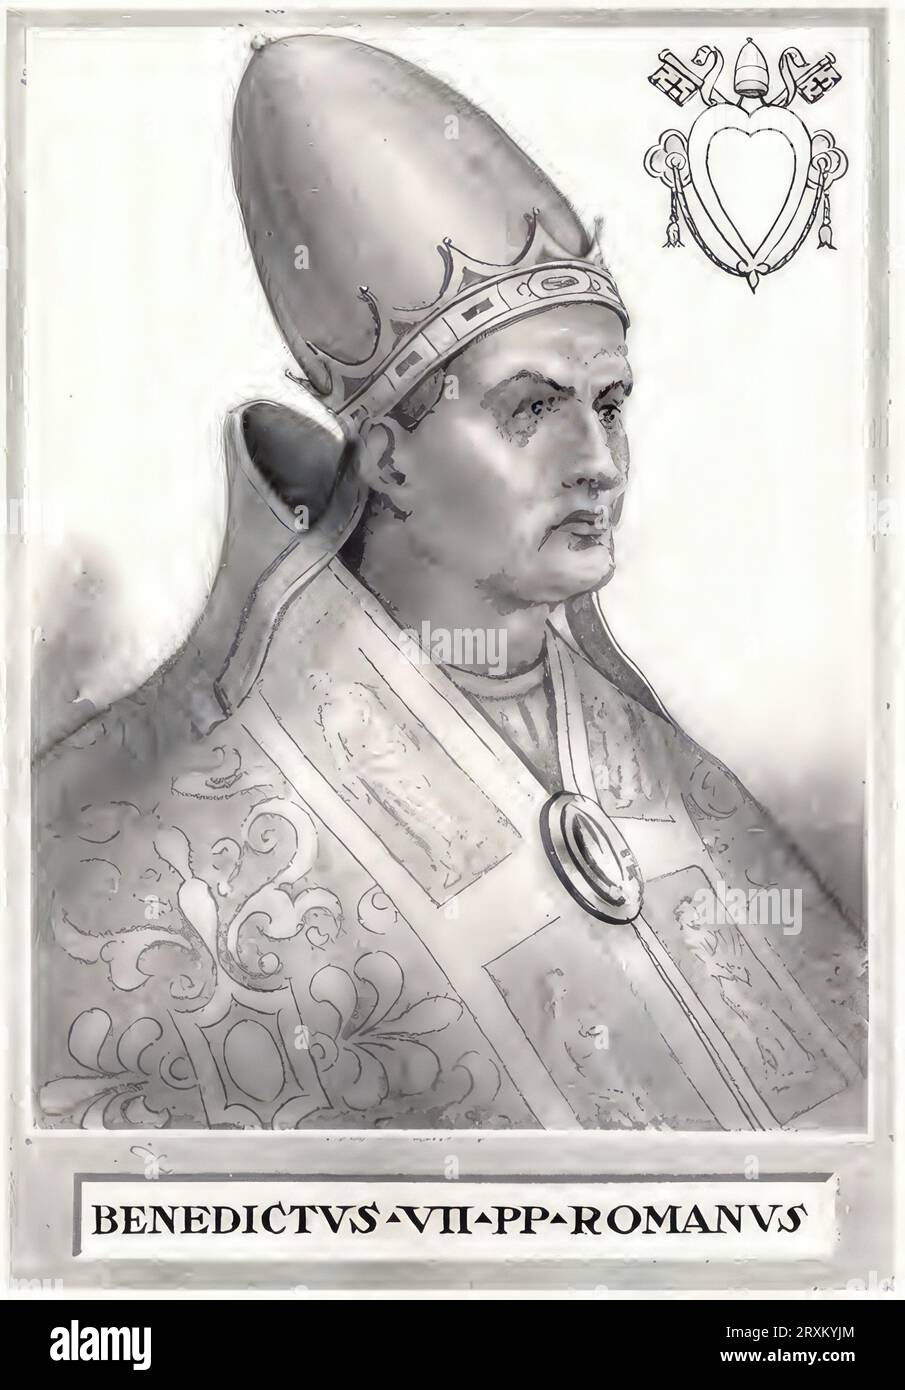 Benedikt VII (Geboren in Rom, verstorben 10. Juli 983 in Rom) war Papst von 974 bis 983. Er war als Sohn Deodats der Enkel von Alberich II Von Spoleto und Neffe Johannes’ XII Er wird der vierte Papst aus dem Geschlecht der Grafen von Tusculum, Historisch, digital restaurierte Reproduktion von einer Vorlage aus dem 19. Jahrhundert / Benedikt VII. (Geboren in Rom, gestorben am 10. Juli 983 in Rom) war von 974 bis 983 Papst, Sohn von Deodat, Enkel von Alberic II. Von Spoleto und Neffe von Johannes XII Er wurde der vierte Papst aus der Dynastie der Grafen von Tusculum, historisch, digital restauriert R. Stockfoto